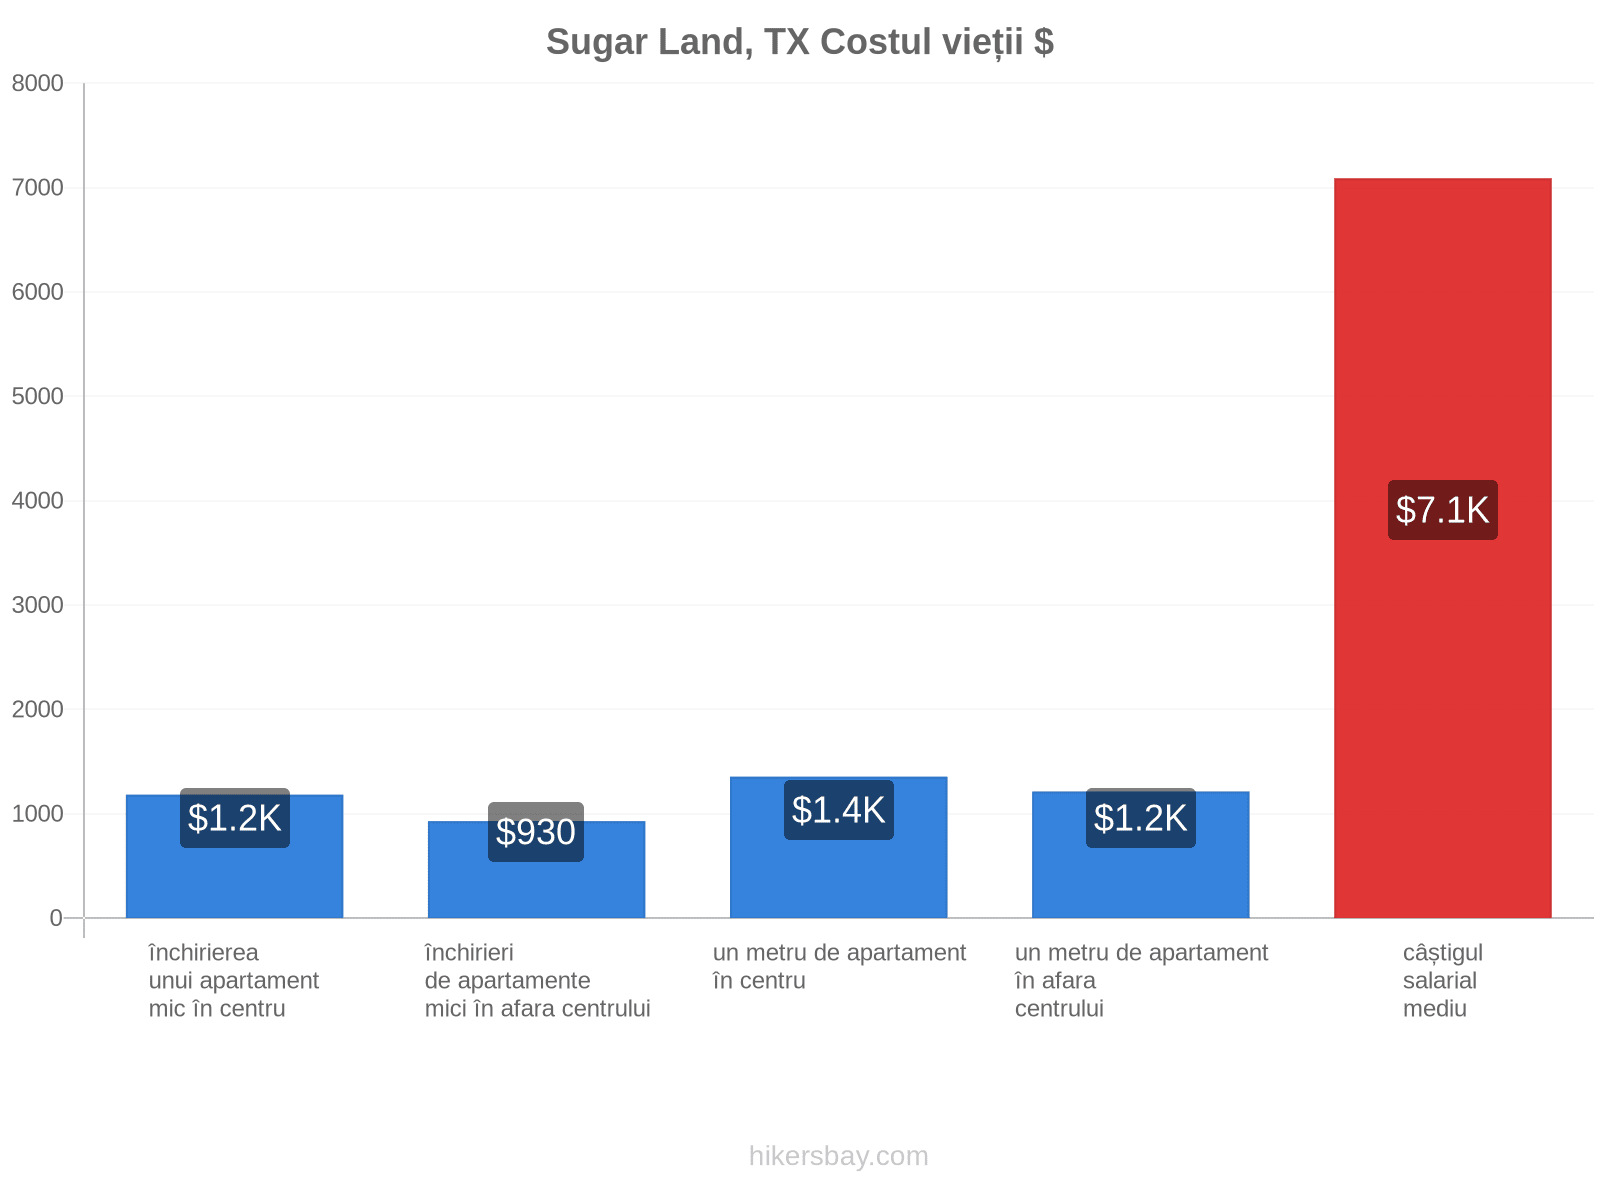 Sugar Land, TX costul vieții hikersbay.com